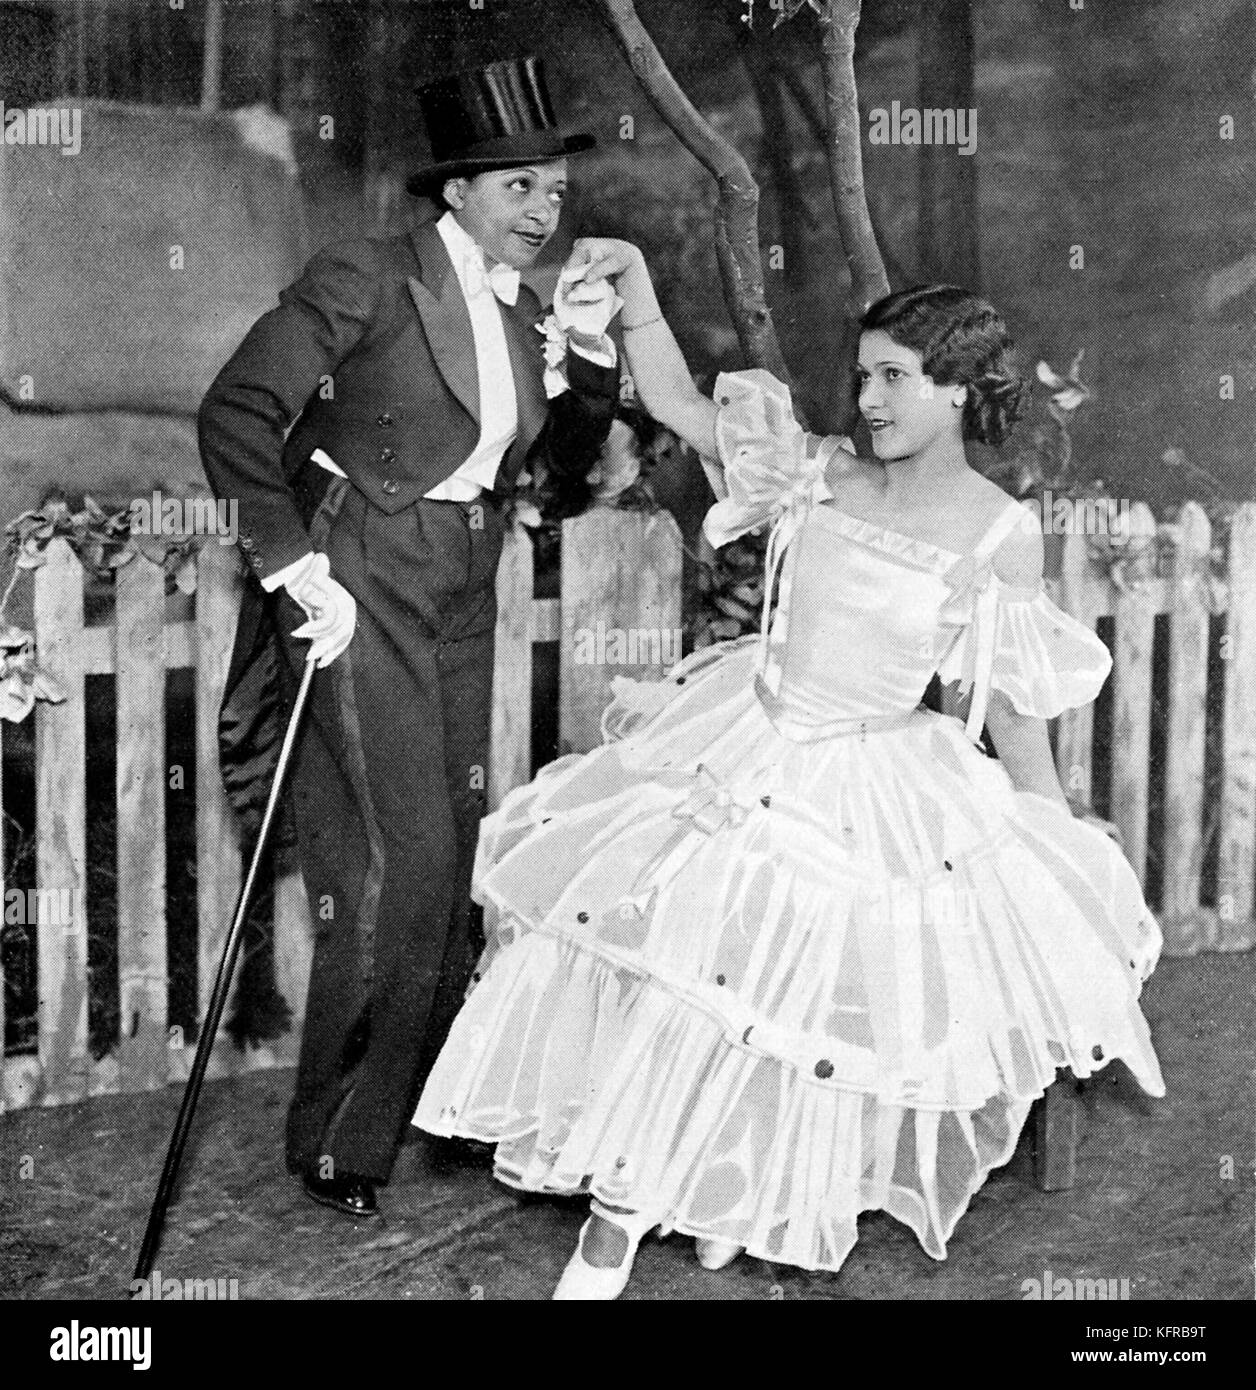 Valaida Snow (2 juin 1904 - 30 mai 1956) et Dorothy Green, chanter "Je ne peux pas vous donner quelque chose, mais l'amour', 'l'Leslie dans ase épaulettes de 1935", au London Coliseum, 1935. Banque D'Images